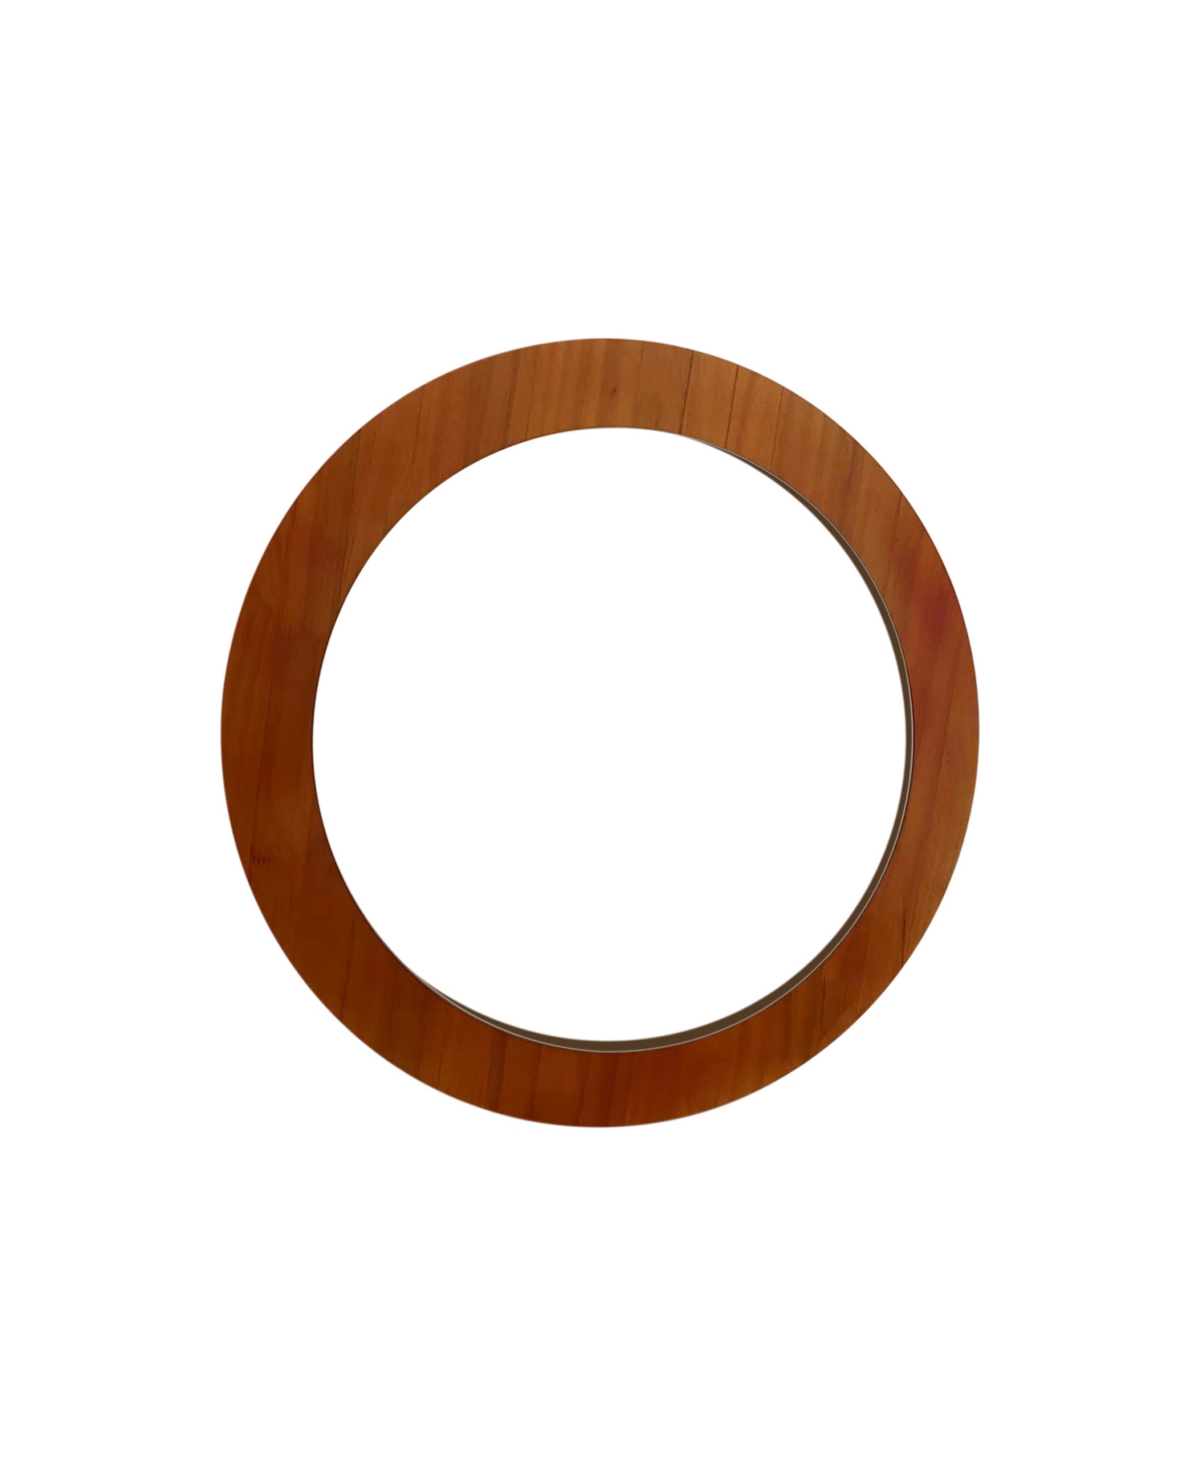 Mirrorize Round Wood Mirror, 29" Diameter In Brown